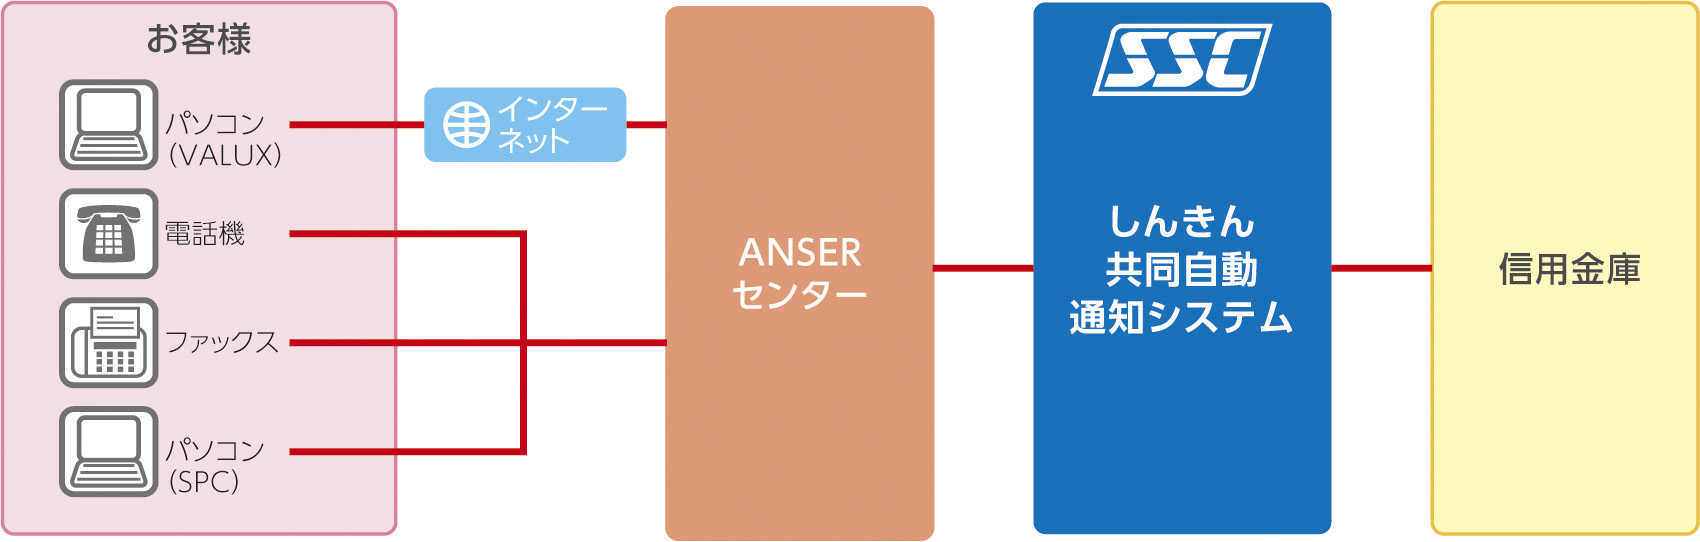 しんきん共同自動通知（ANSER）システム